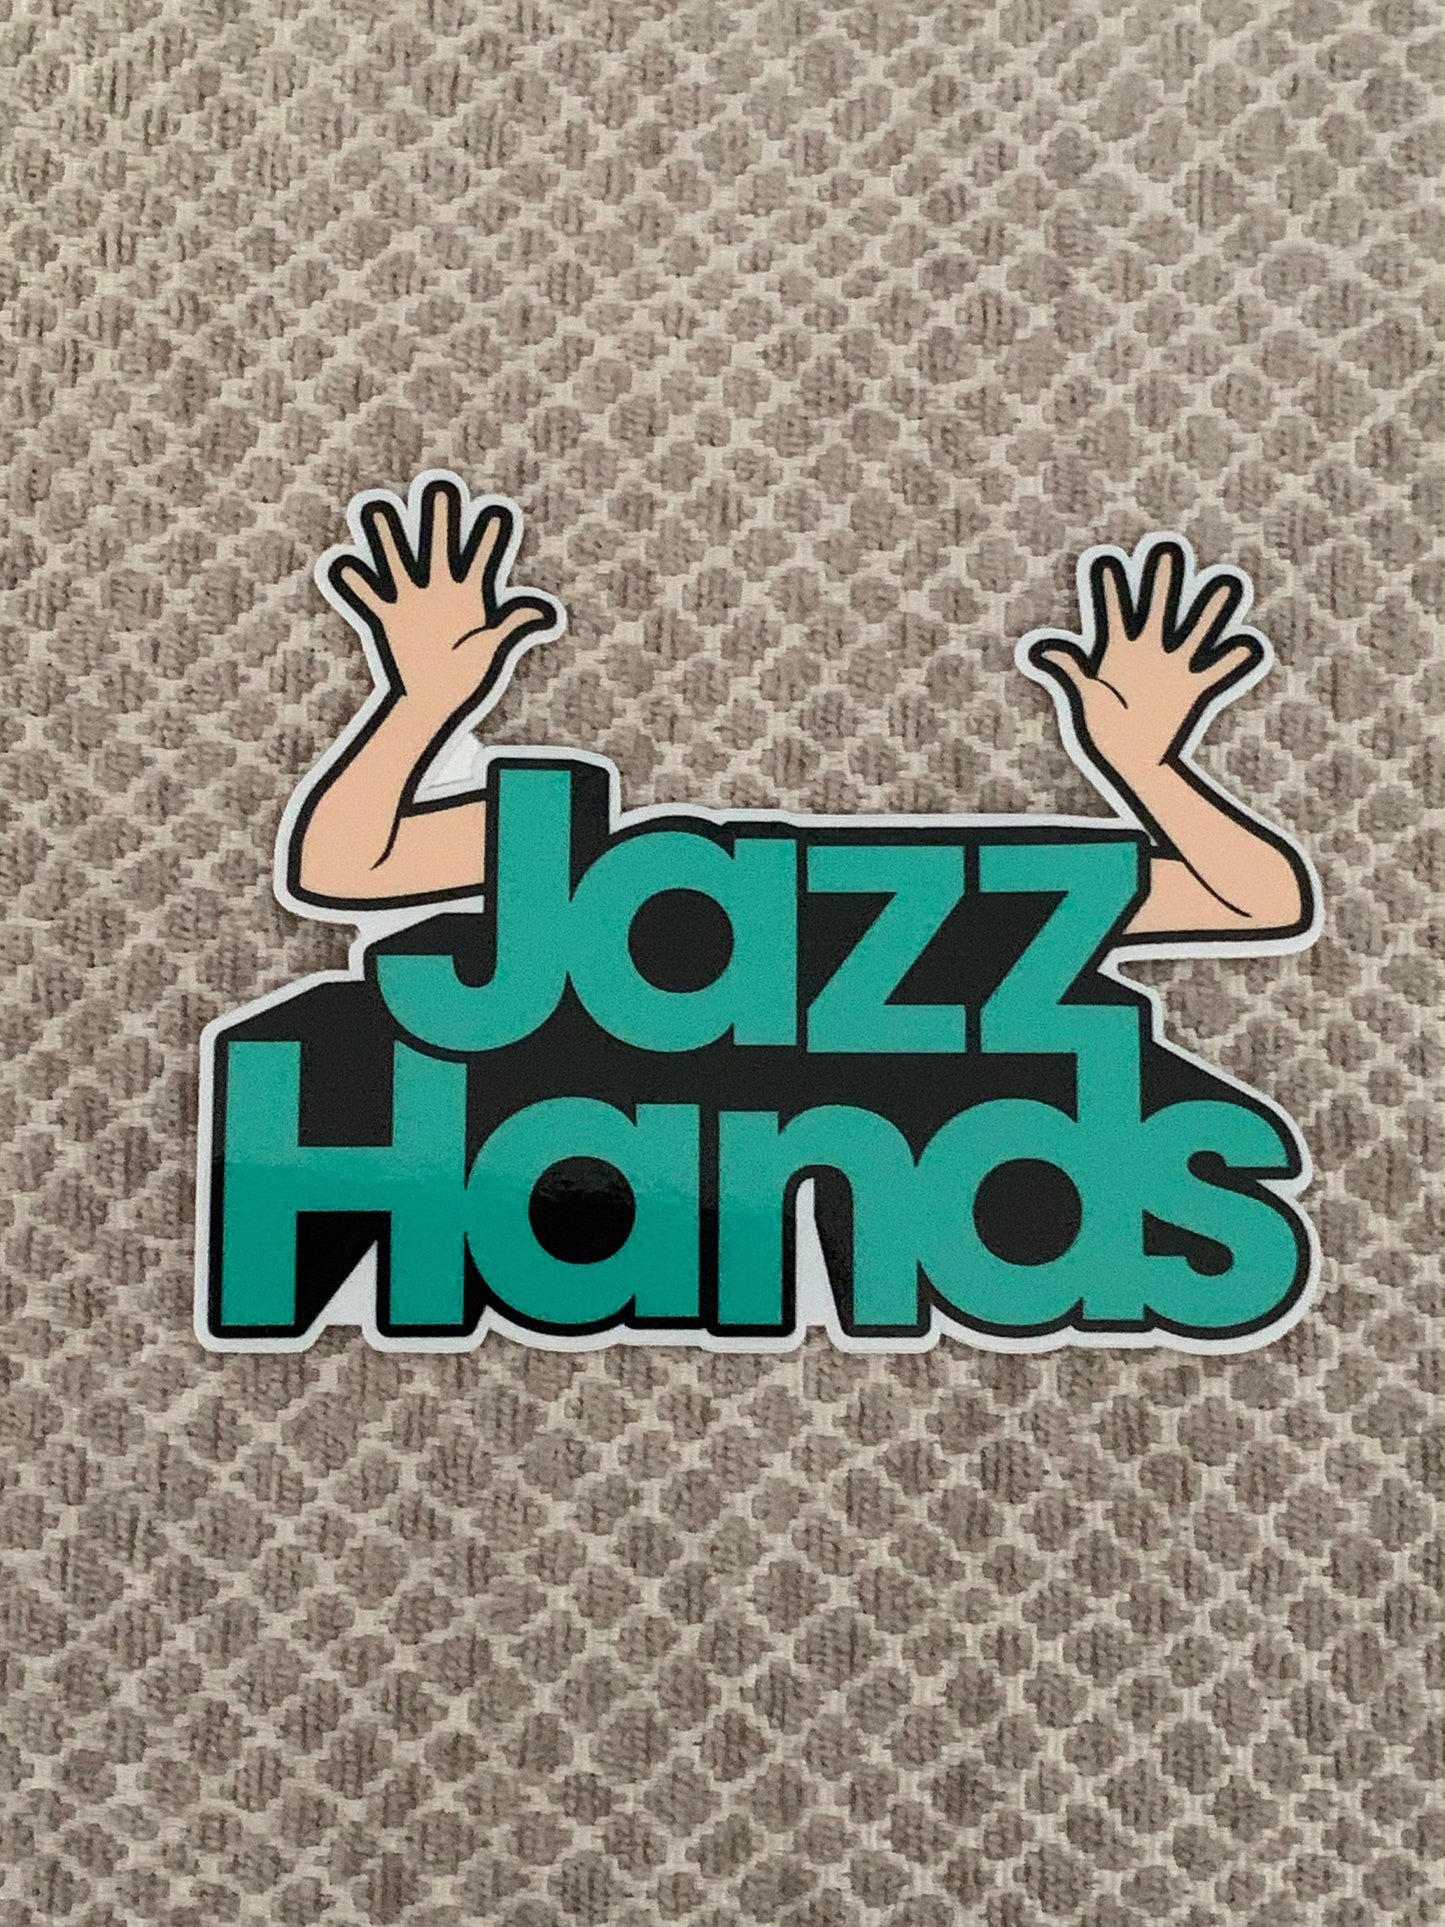 Jazz Hands Dance Vinyl Sticker, Vinyl Decal, Laptop Sticker, Dance Sticker, Gifts For Dancers,